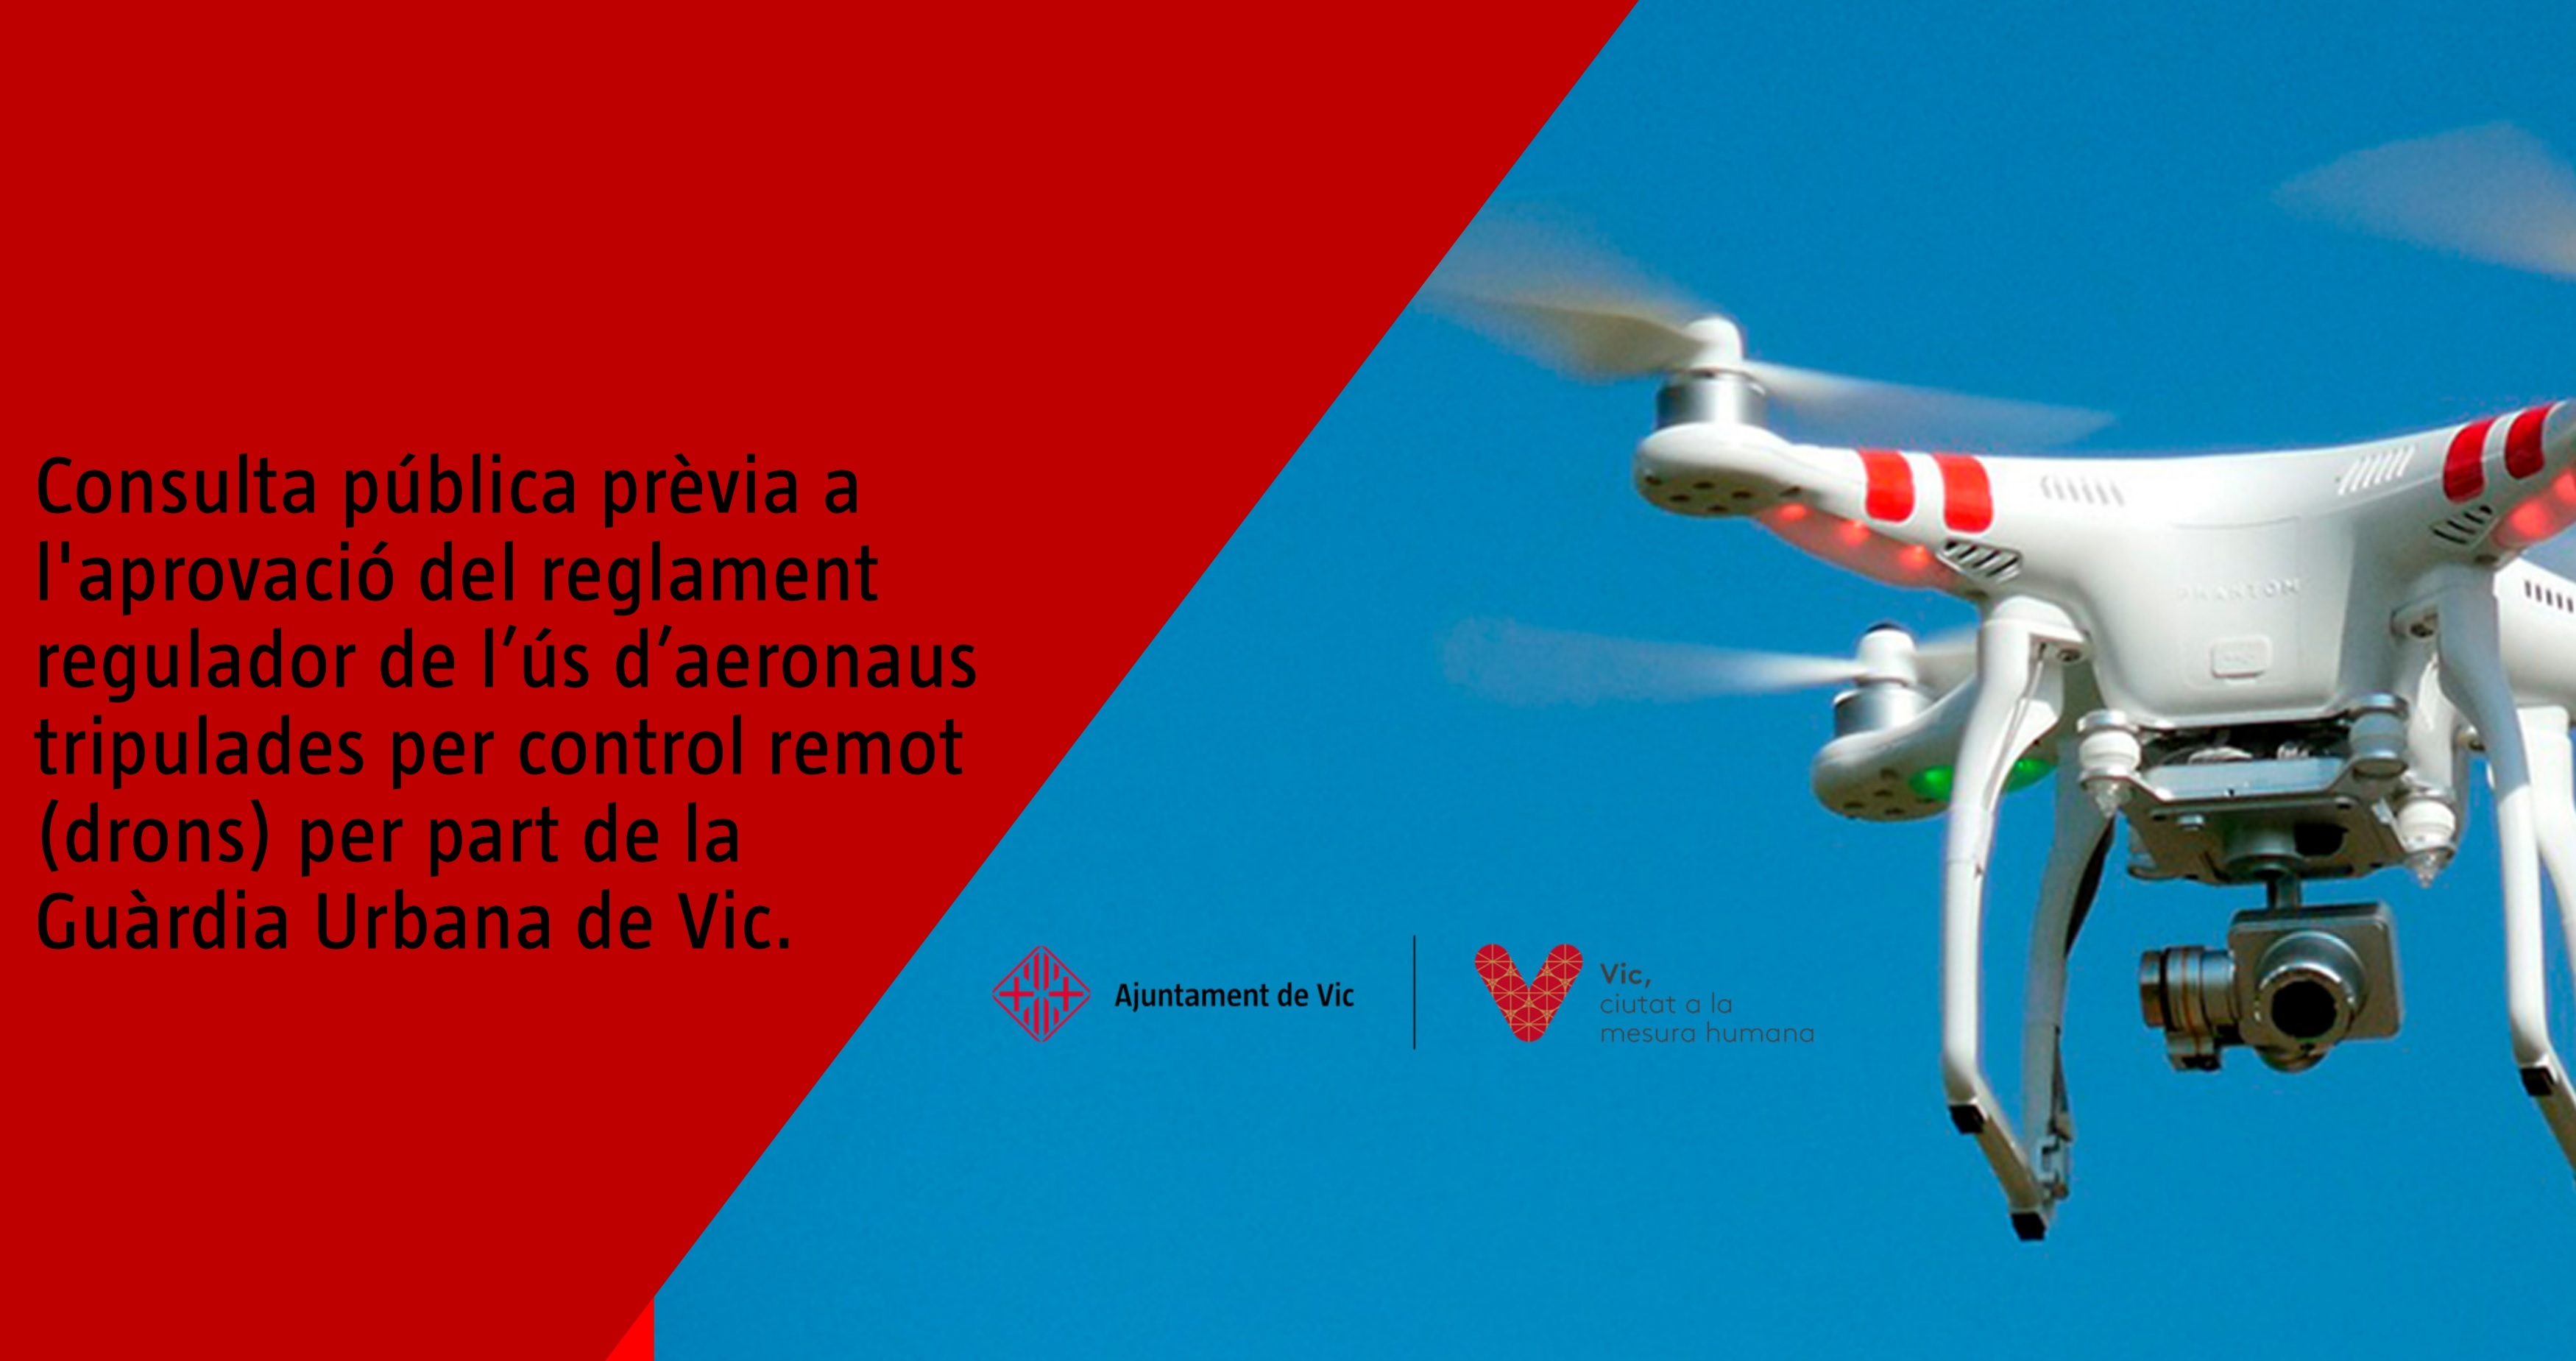 Reglament regulador de l’ús d’aeronaus tripulades per control remot (drons) per part de la Guàrdia Urbana de Vic.